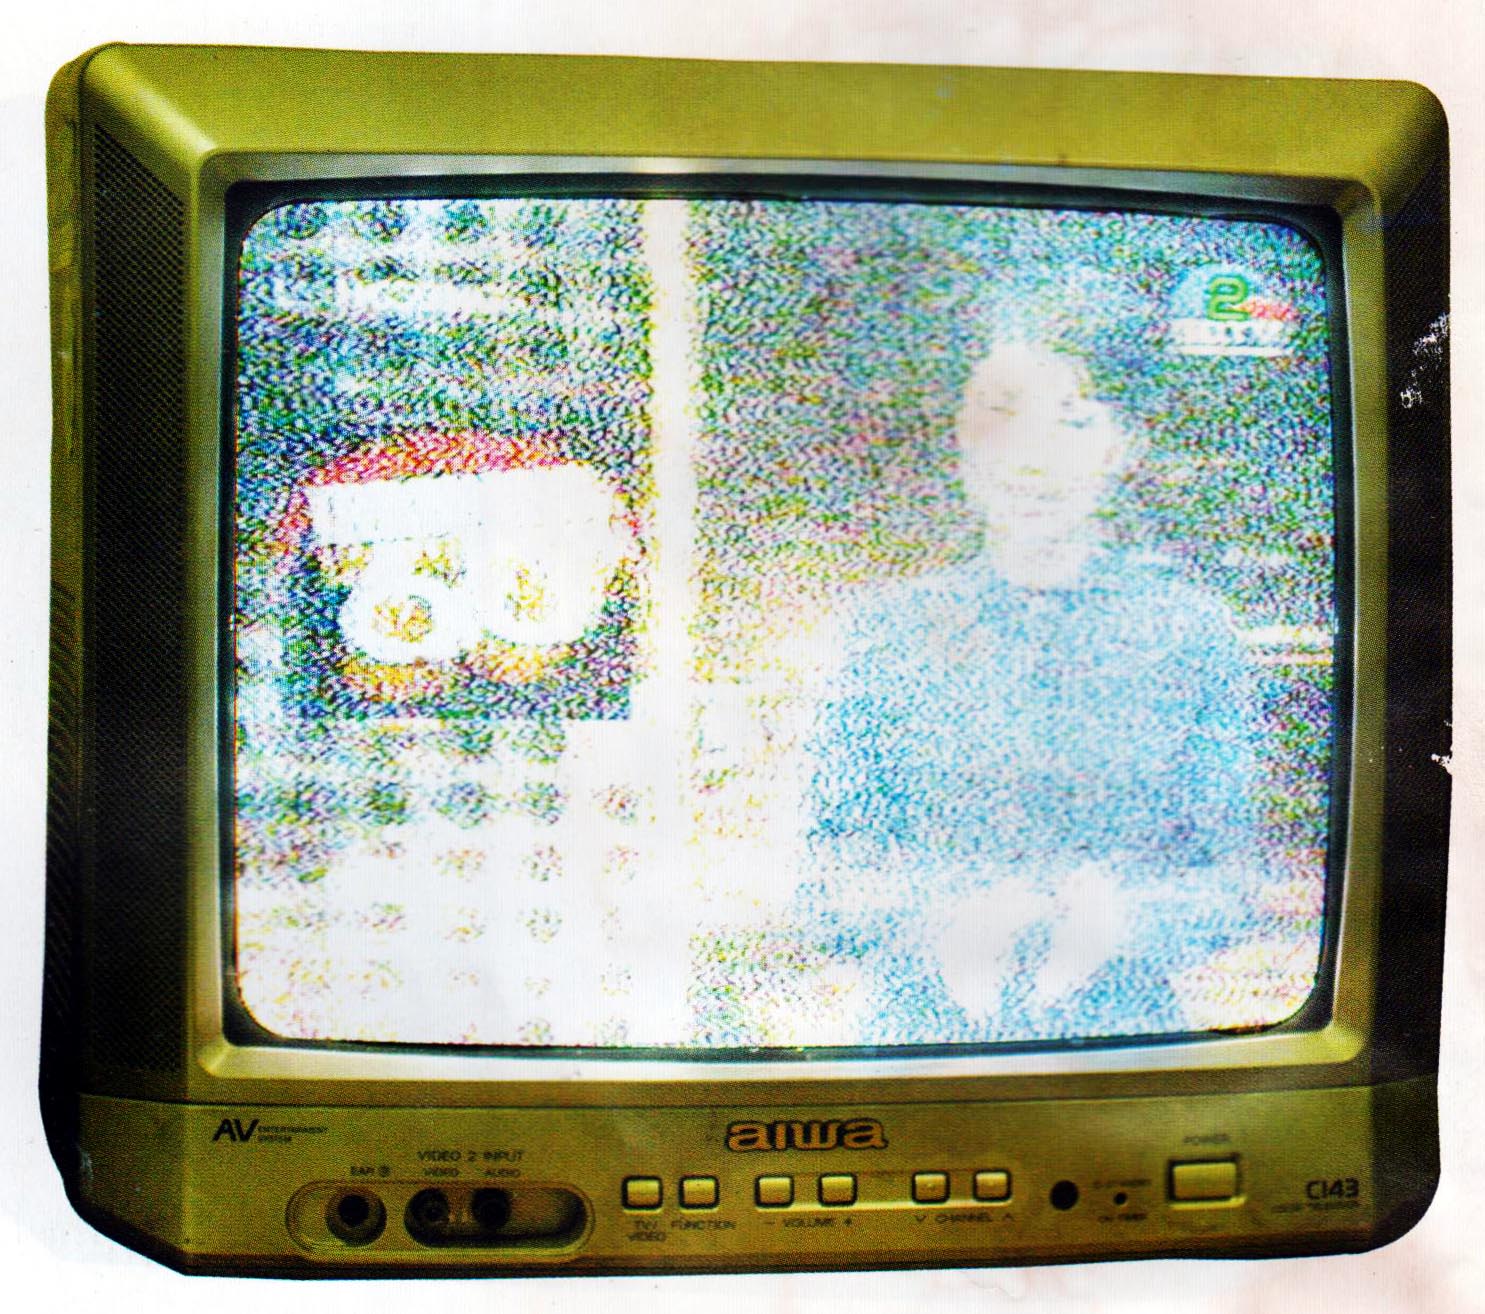 Gangguan Noise pada Gambar Tv - WWW.USAHAHOBI.COM